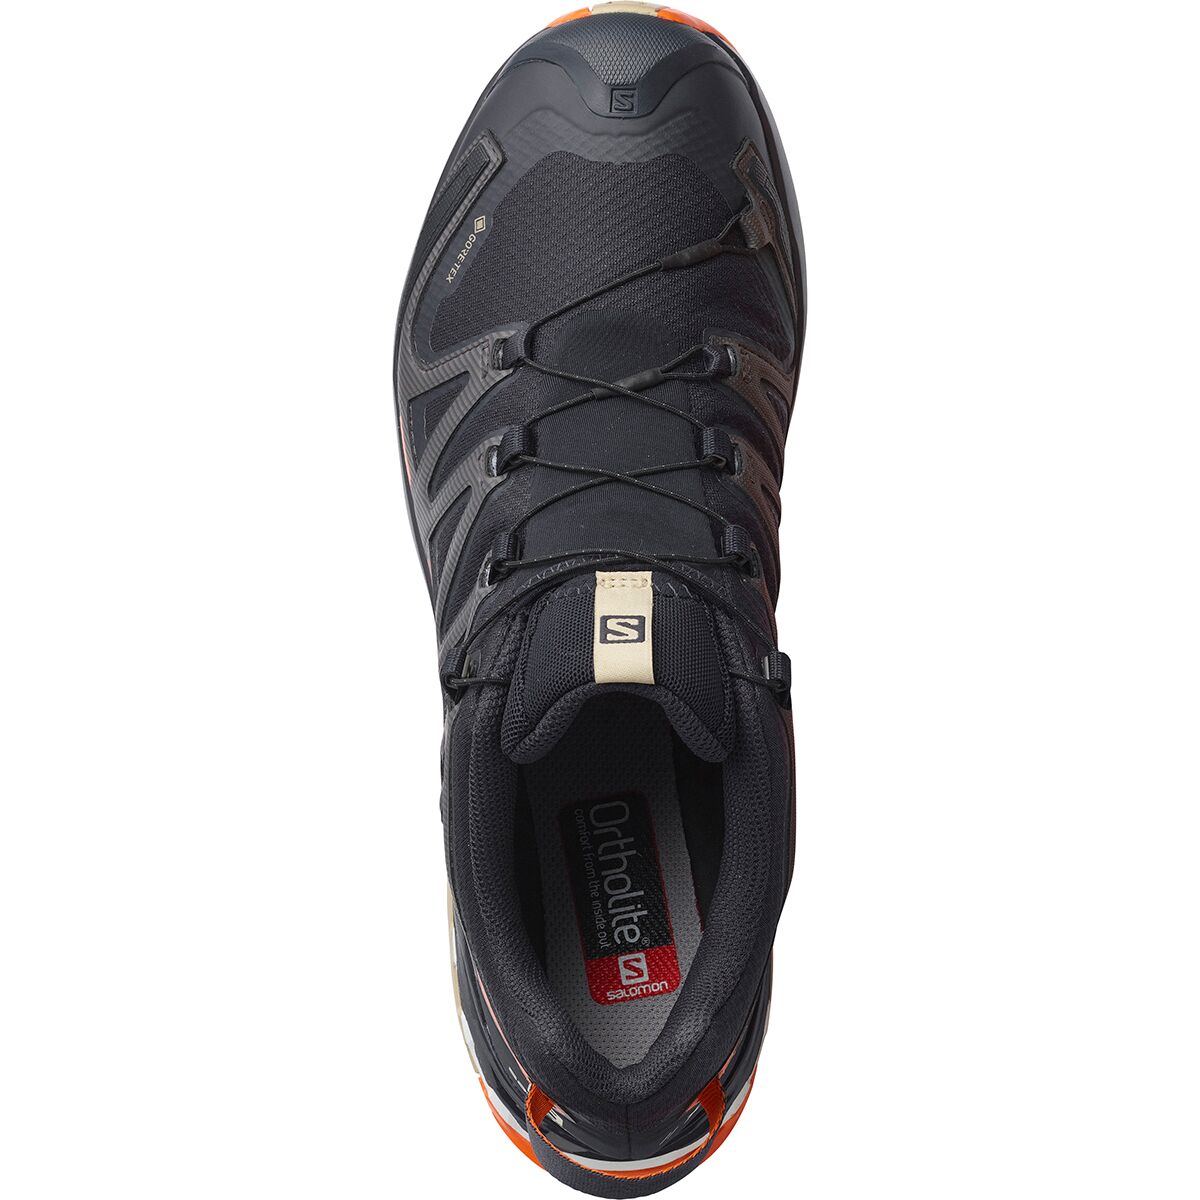 kom videre Kent Regulering Salomon XA Pro 3D V8 GTX Shoe - Men's - Footwear